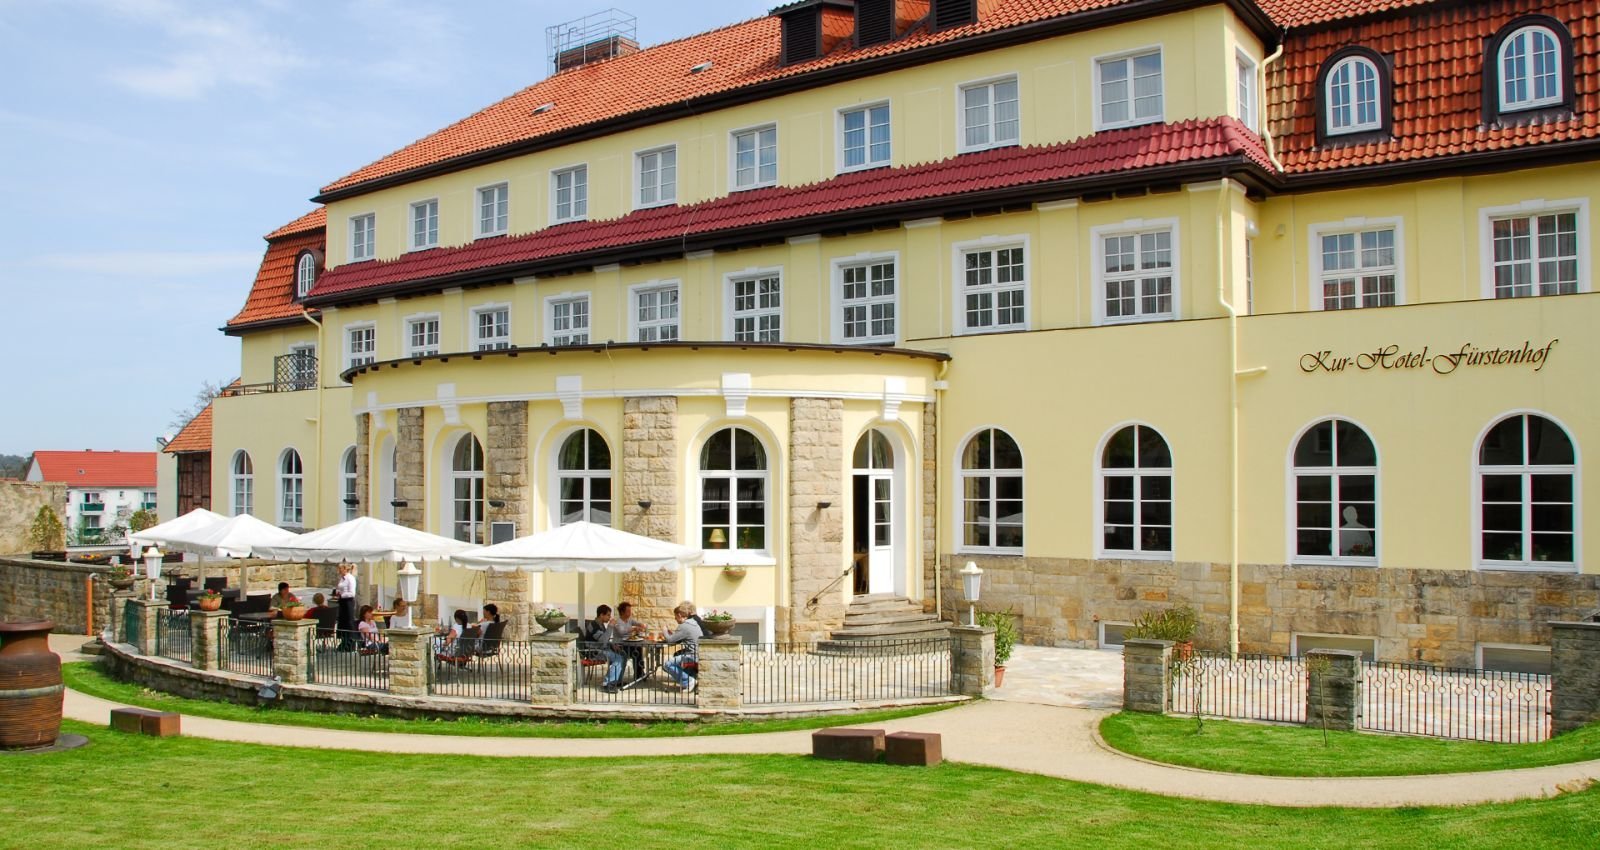 Silvester im Harz (5 Nächte) – Kurhotel Fürstenhof (3.5 Sterne) in Blankenburg, Sachsen-Anhalt inkl. Halbpension